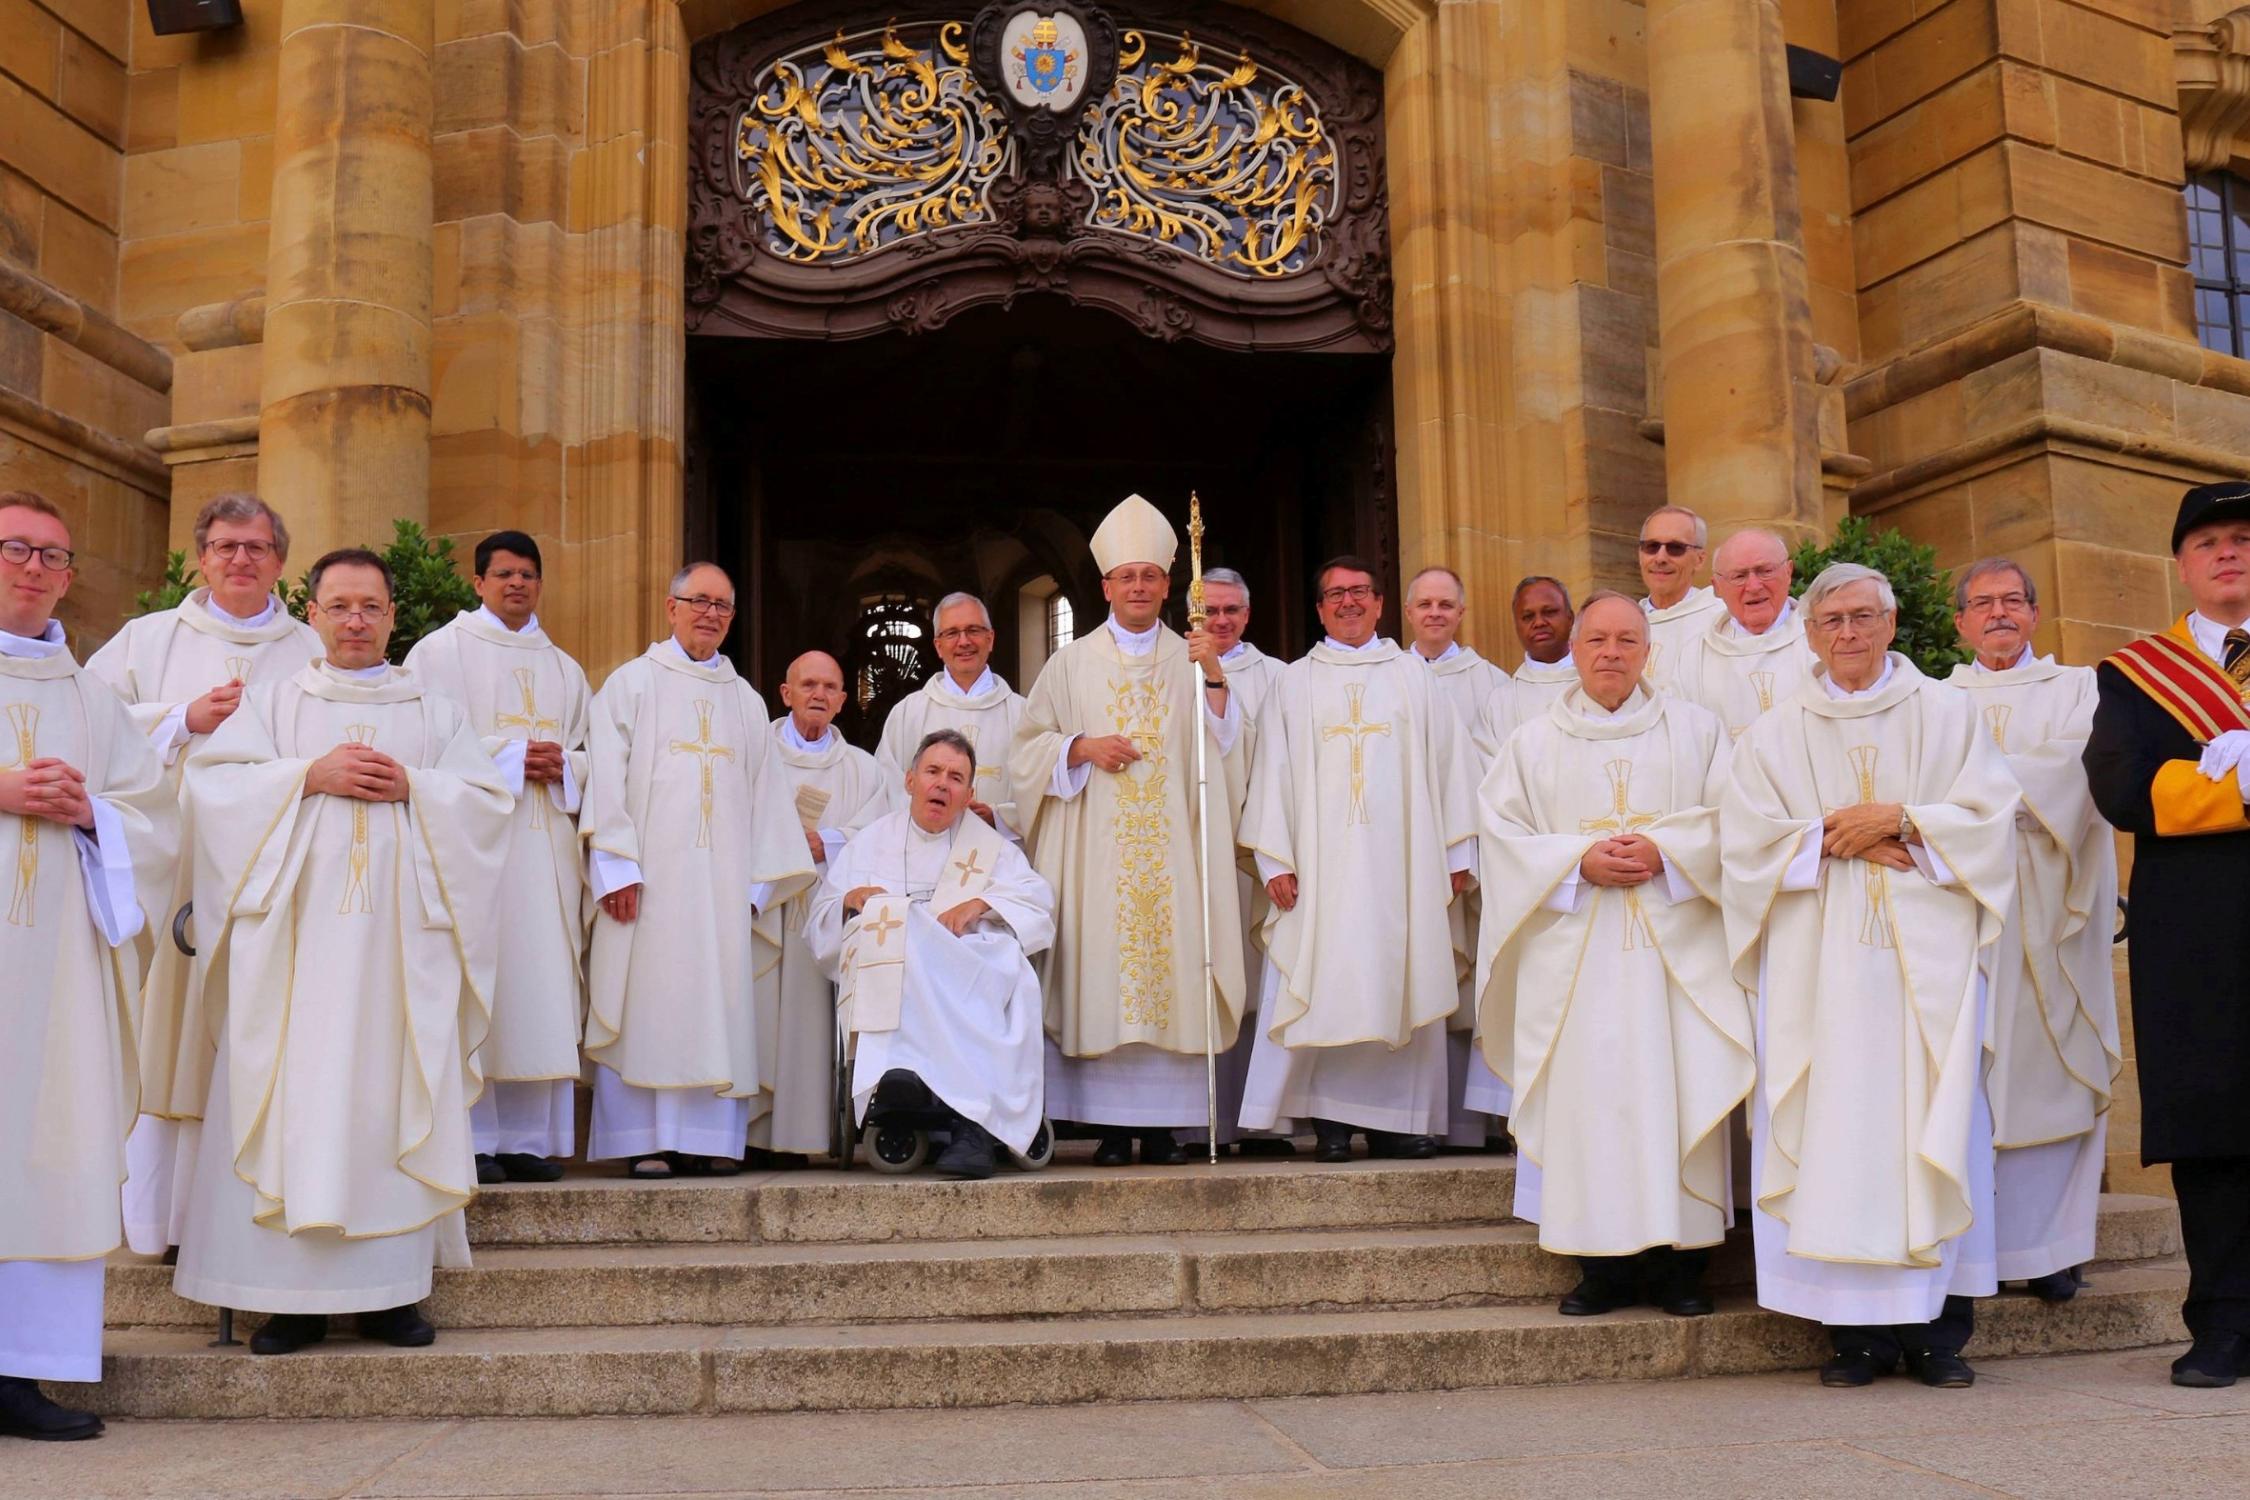 Nach dem Festgottesdienst stellten sich die Priesterjubilare zusammen mit Weihbischof Herwig Gössl und Kirchenschweizer Daniel Reiz den wartenden Fotografen vor der Basilika.